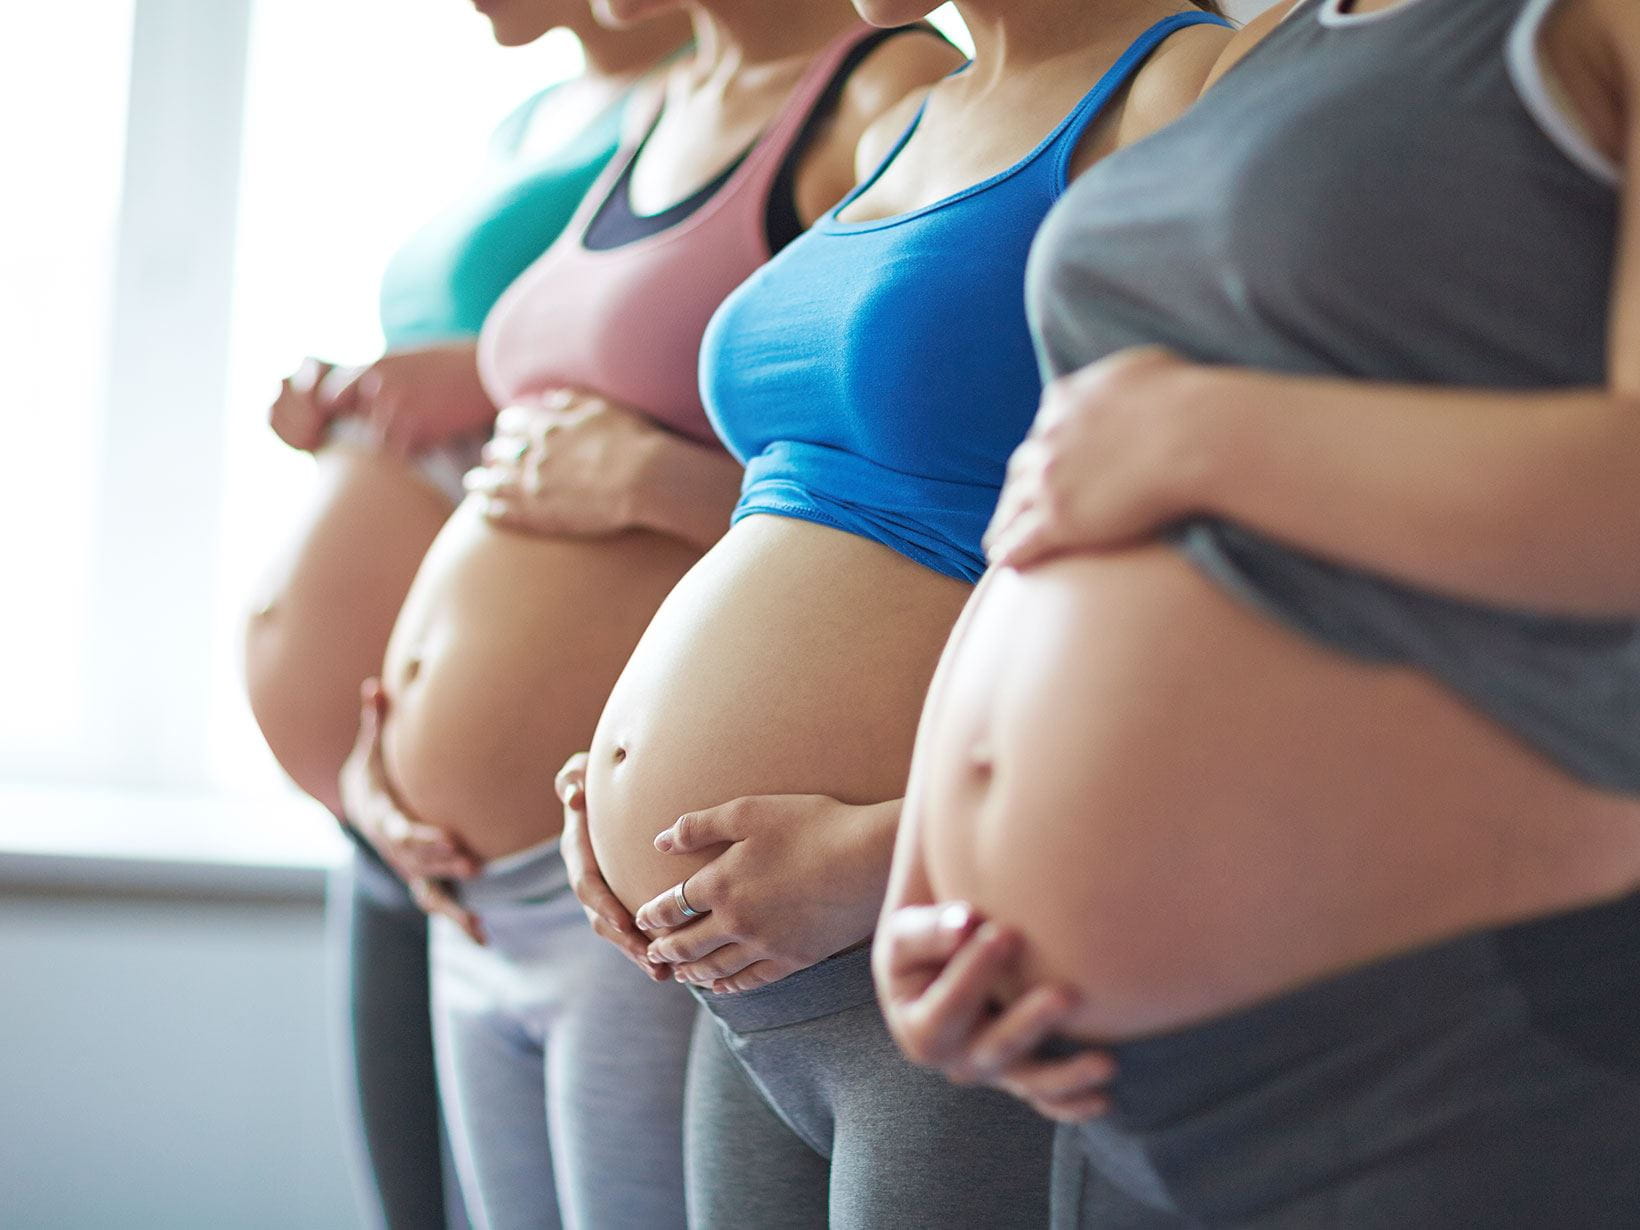 Ventre de la femme enceinte : quelle évolution pendant la grossesse ?